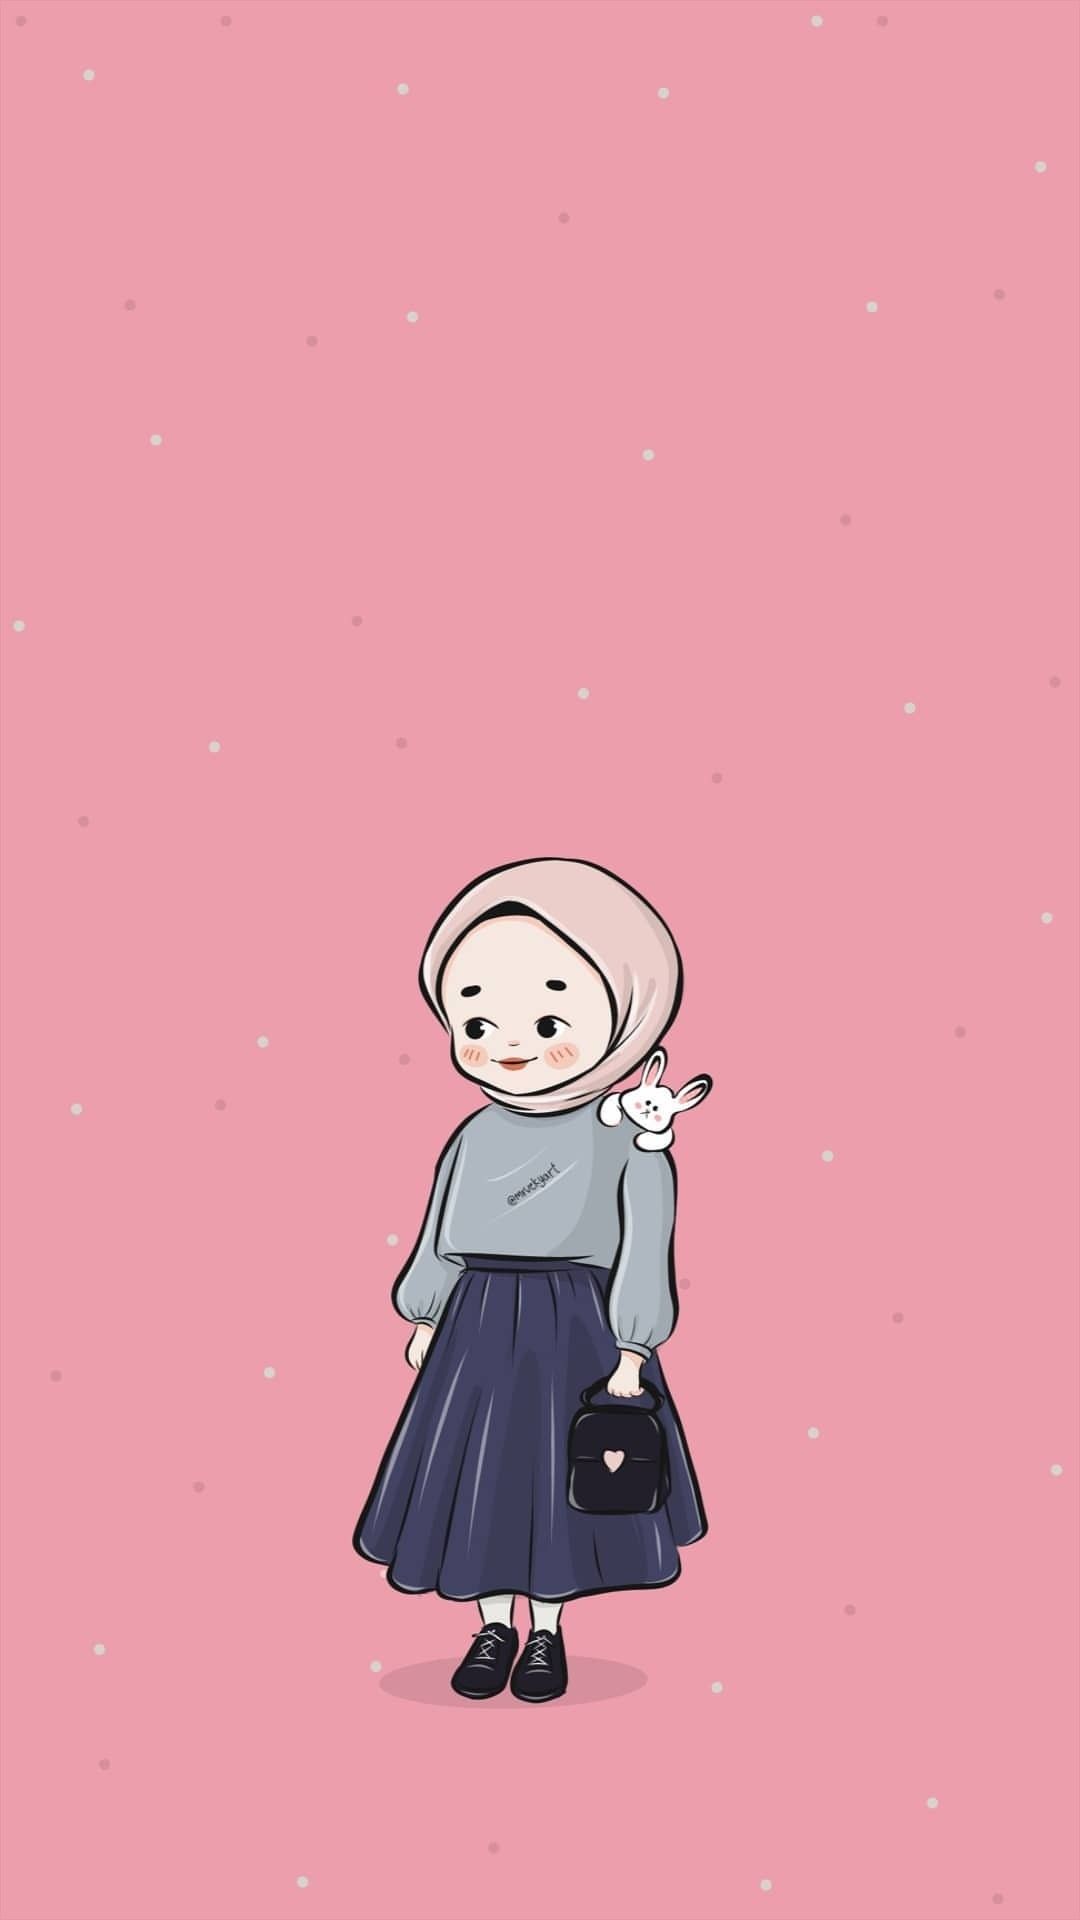 Pin oleh Nurlita di anime muslimah -Elit. Seni islamis, Ilustrasi